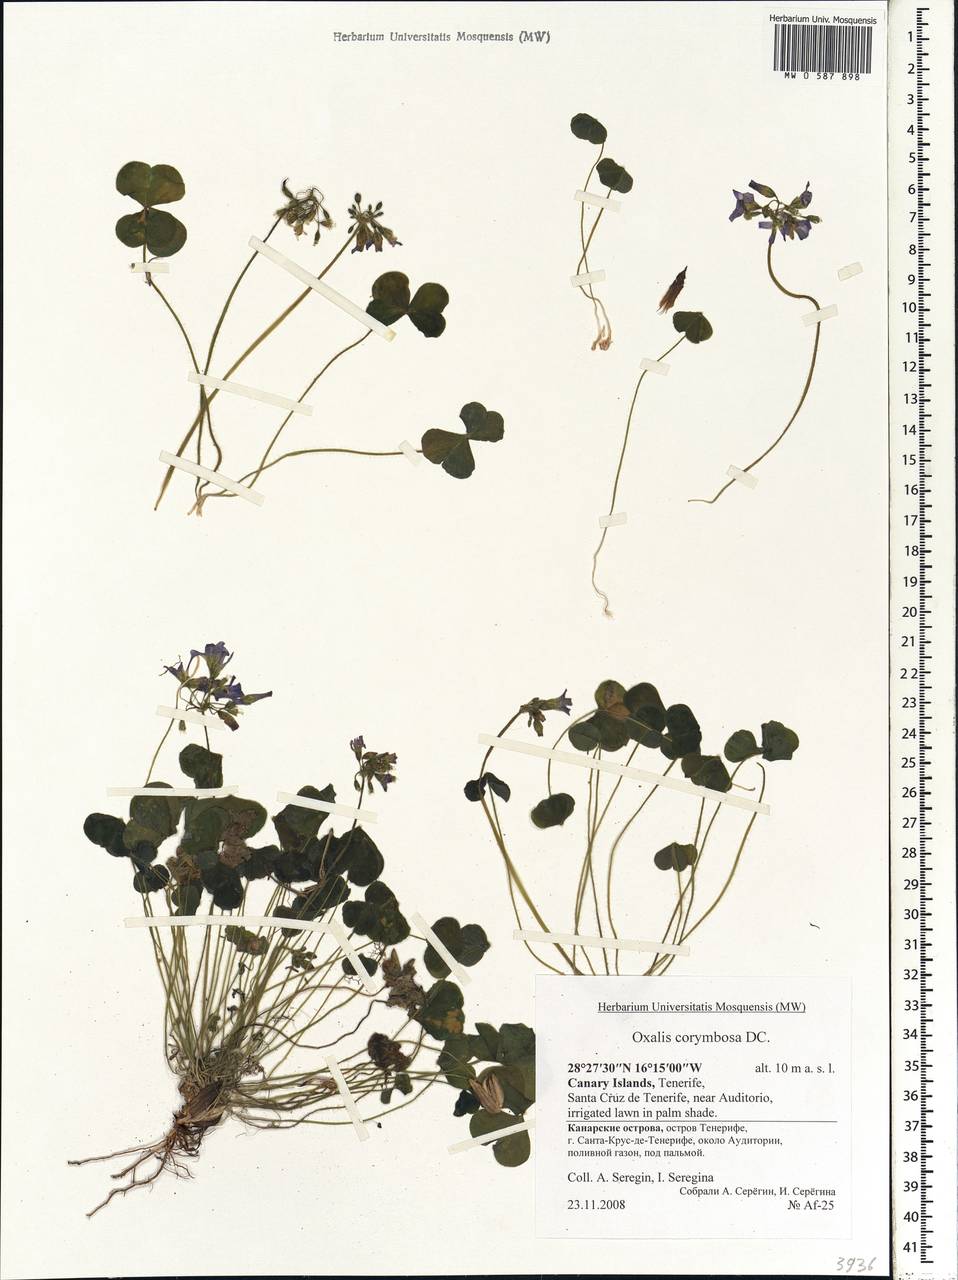 Oxalis debilis subsp. corymbosa (DC.) O. de Bolòs & J. Vigo, Africa (AFR) (Spain)